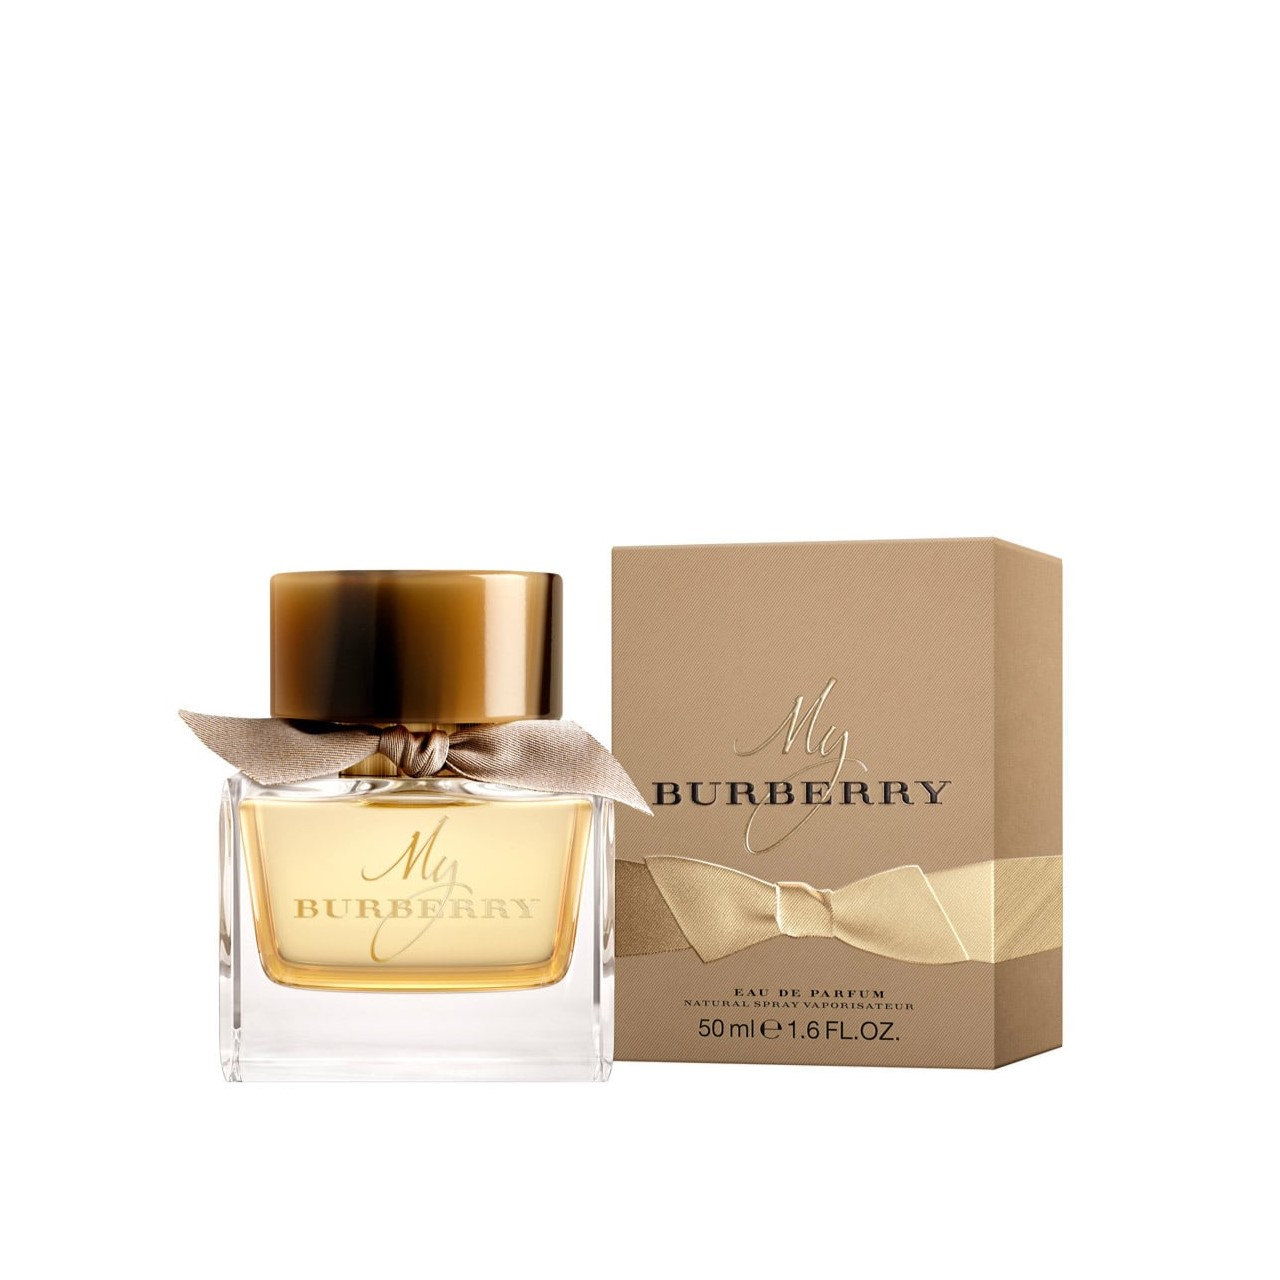 · Burberry Parfum Burberry Macau Buy 50ml My de Eau